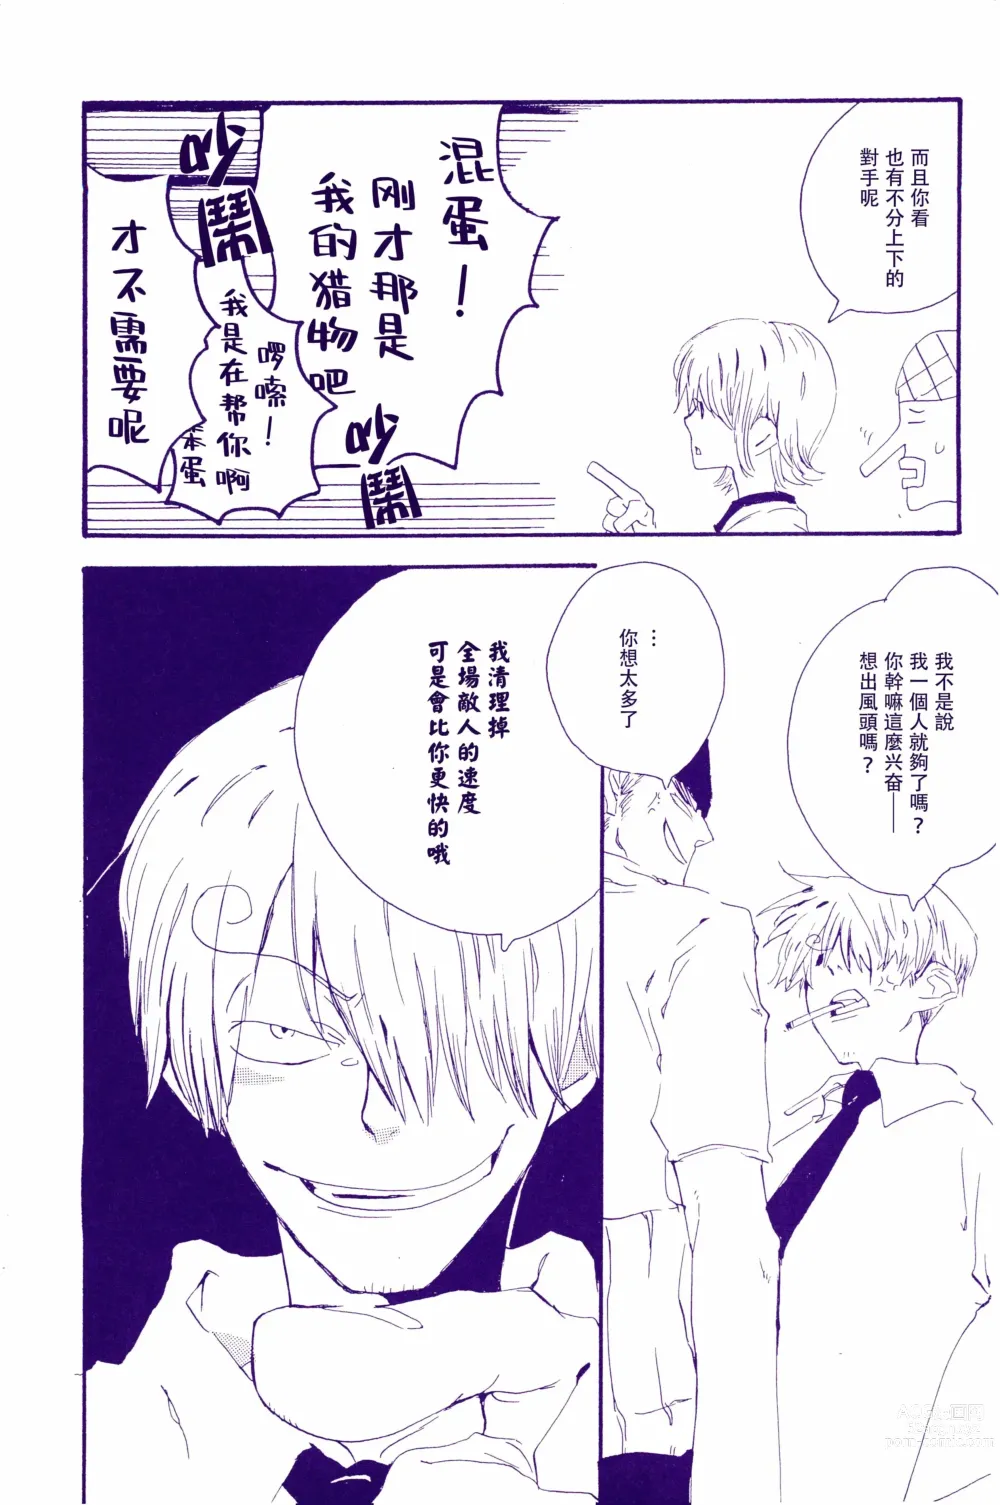 Page 13 of doujinshi 在暴风雨的夜晚 2